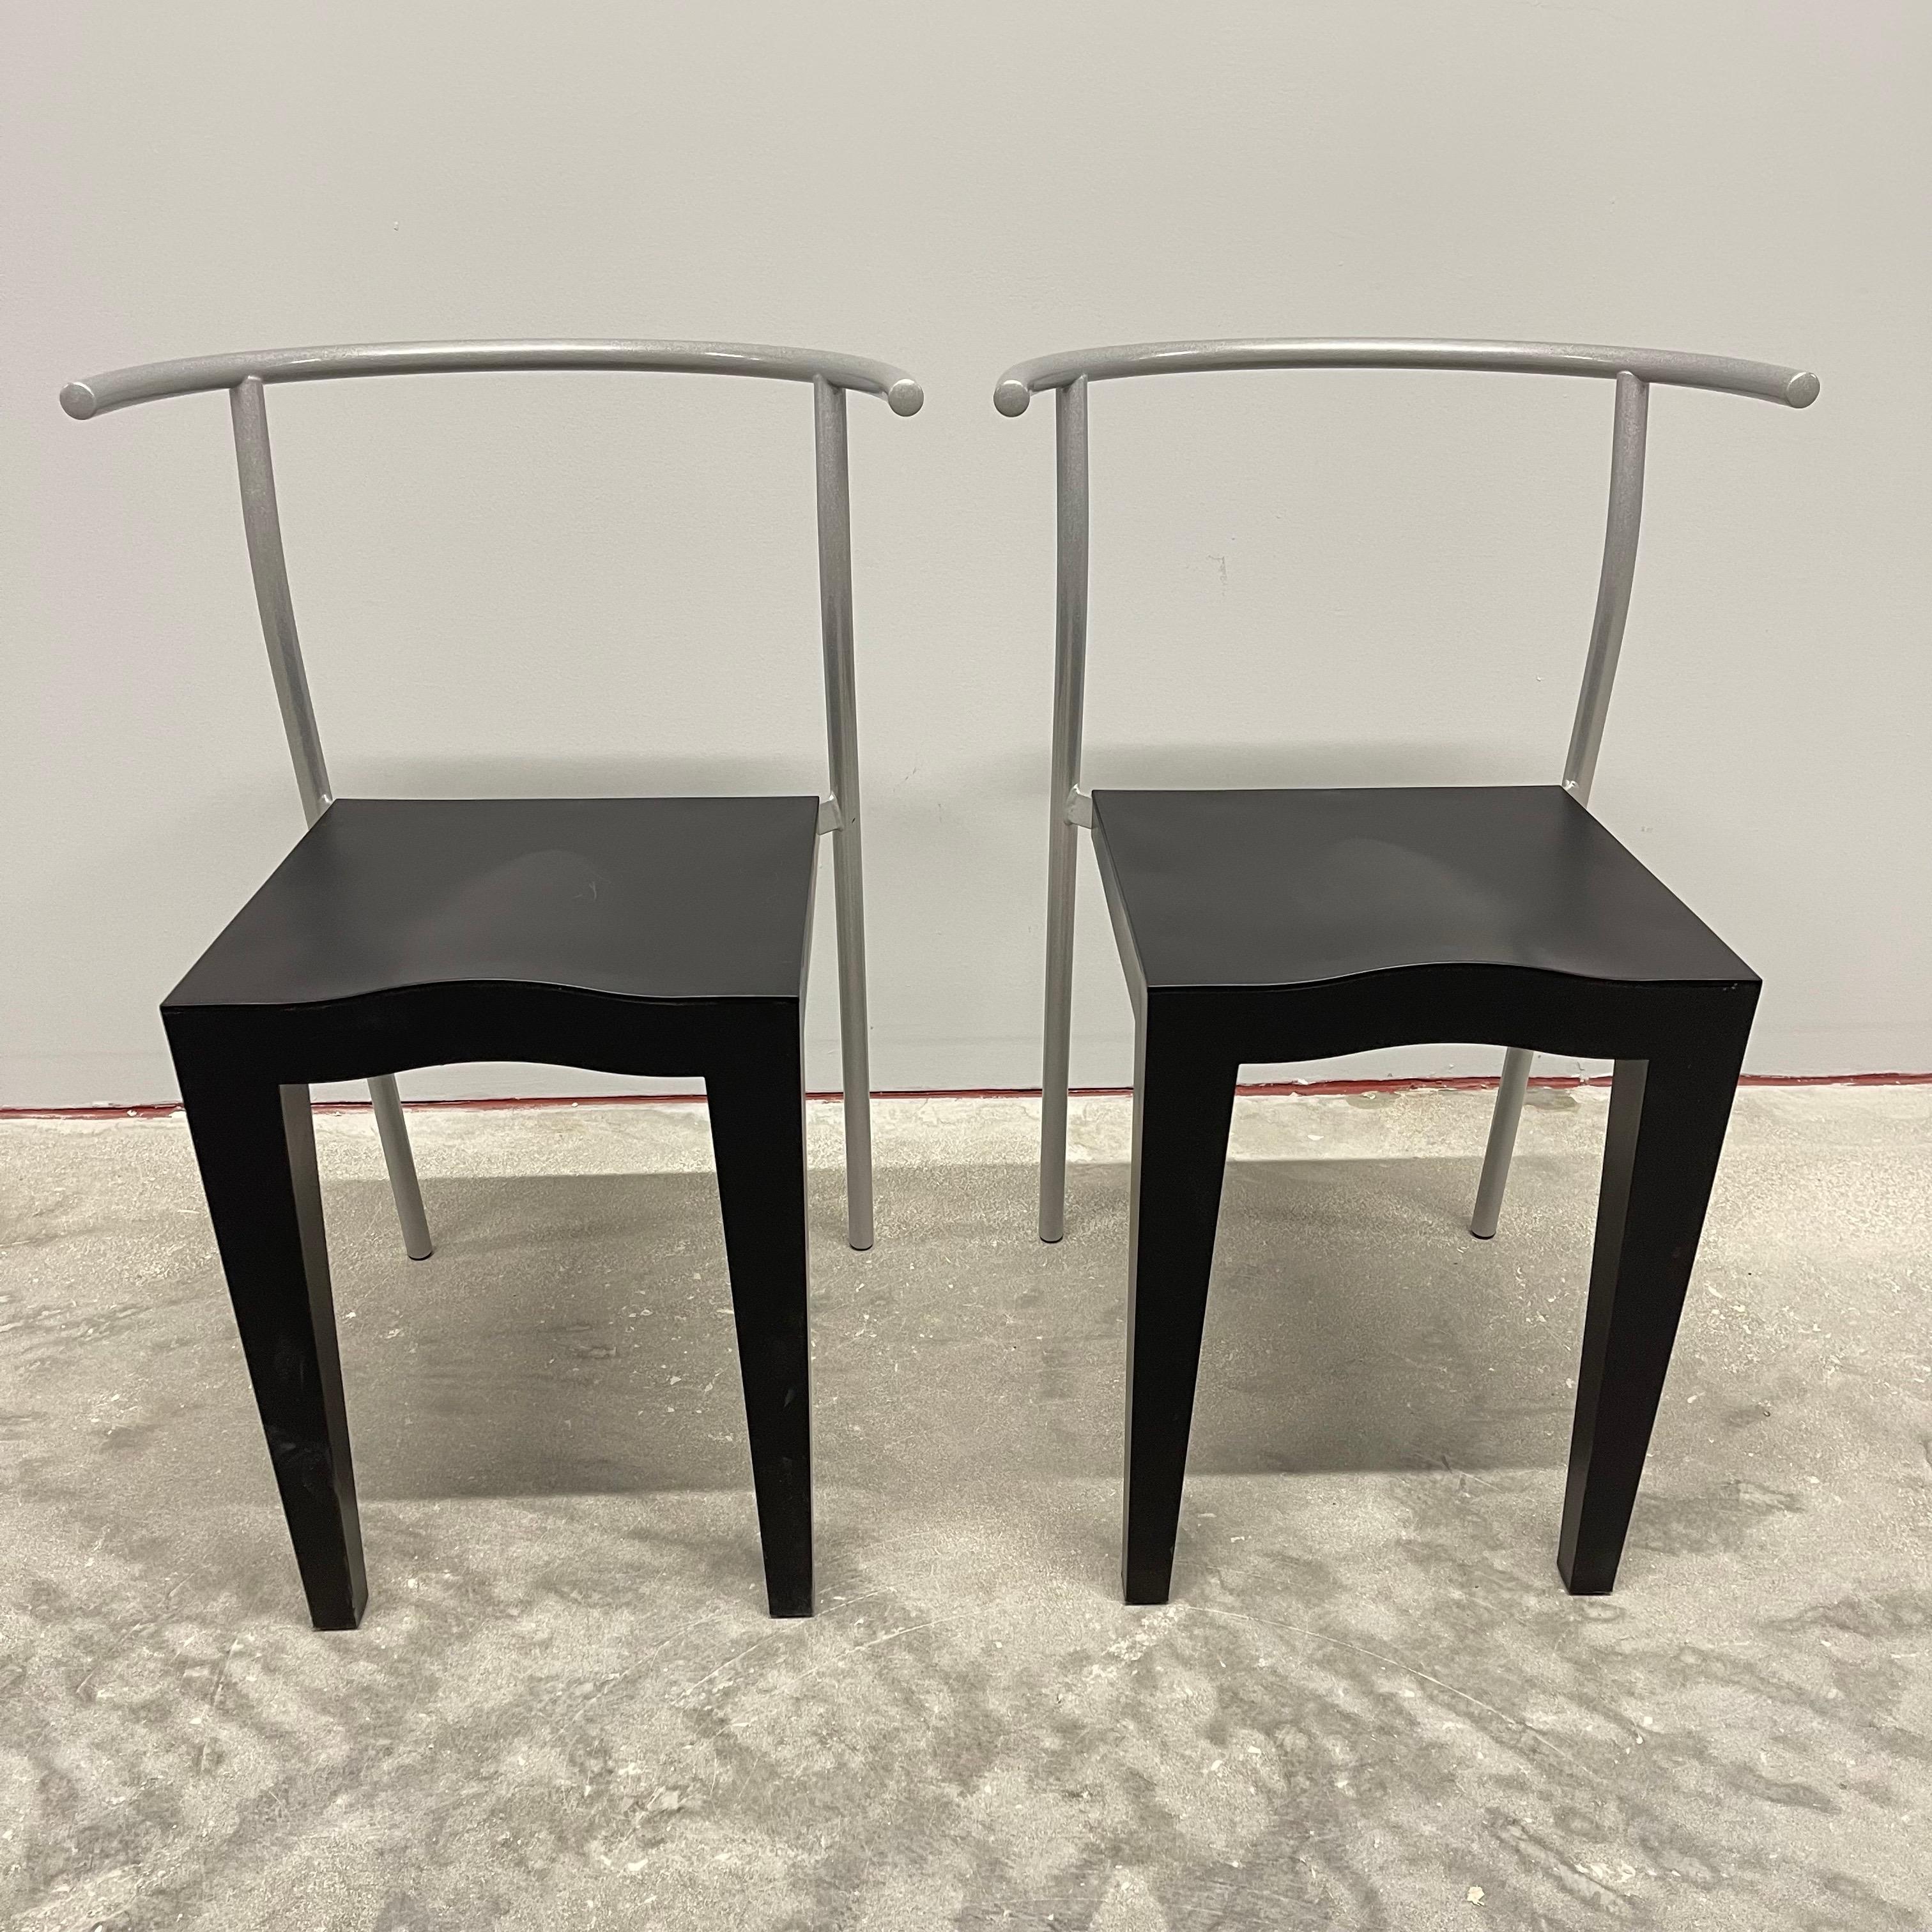 Ein Paar der kultigen Dr. Glob-Stühle. Postmodernes Design aus schwarzem, geformtem Propylen mit einem grauen, pulverbeschichteten Stahlrahmen und Beinen. Entworfen von Philippe Starck für Kartell, 1990.